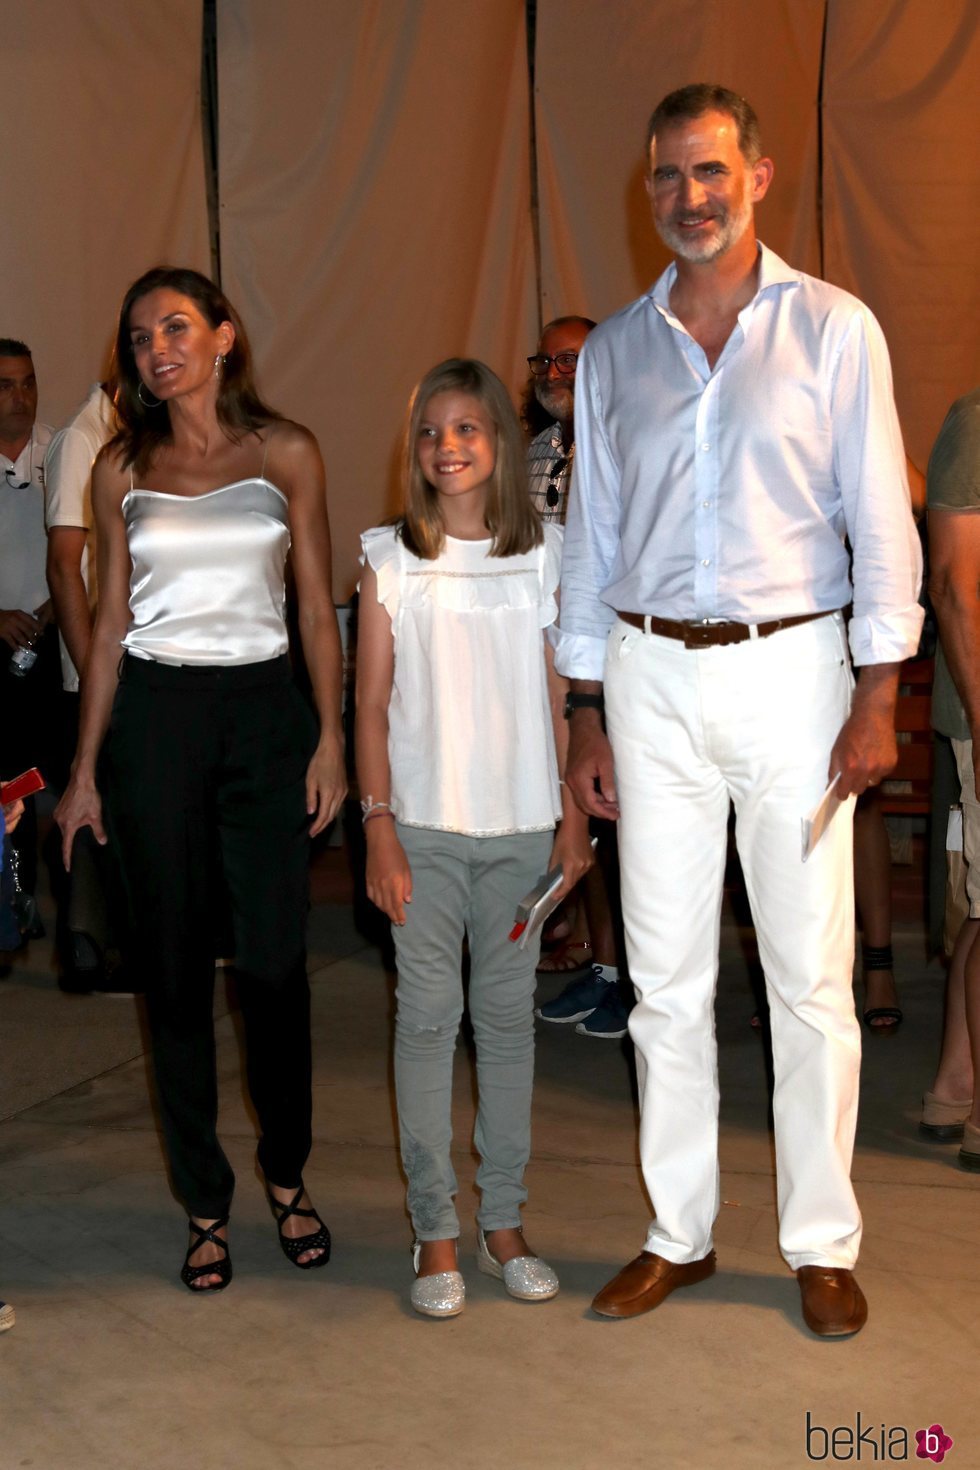 Los Reyes Felipe y Letizia y la Infanta Sofía en el concierto de Ara Malikian en Mallorca